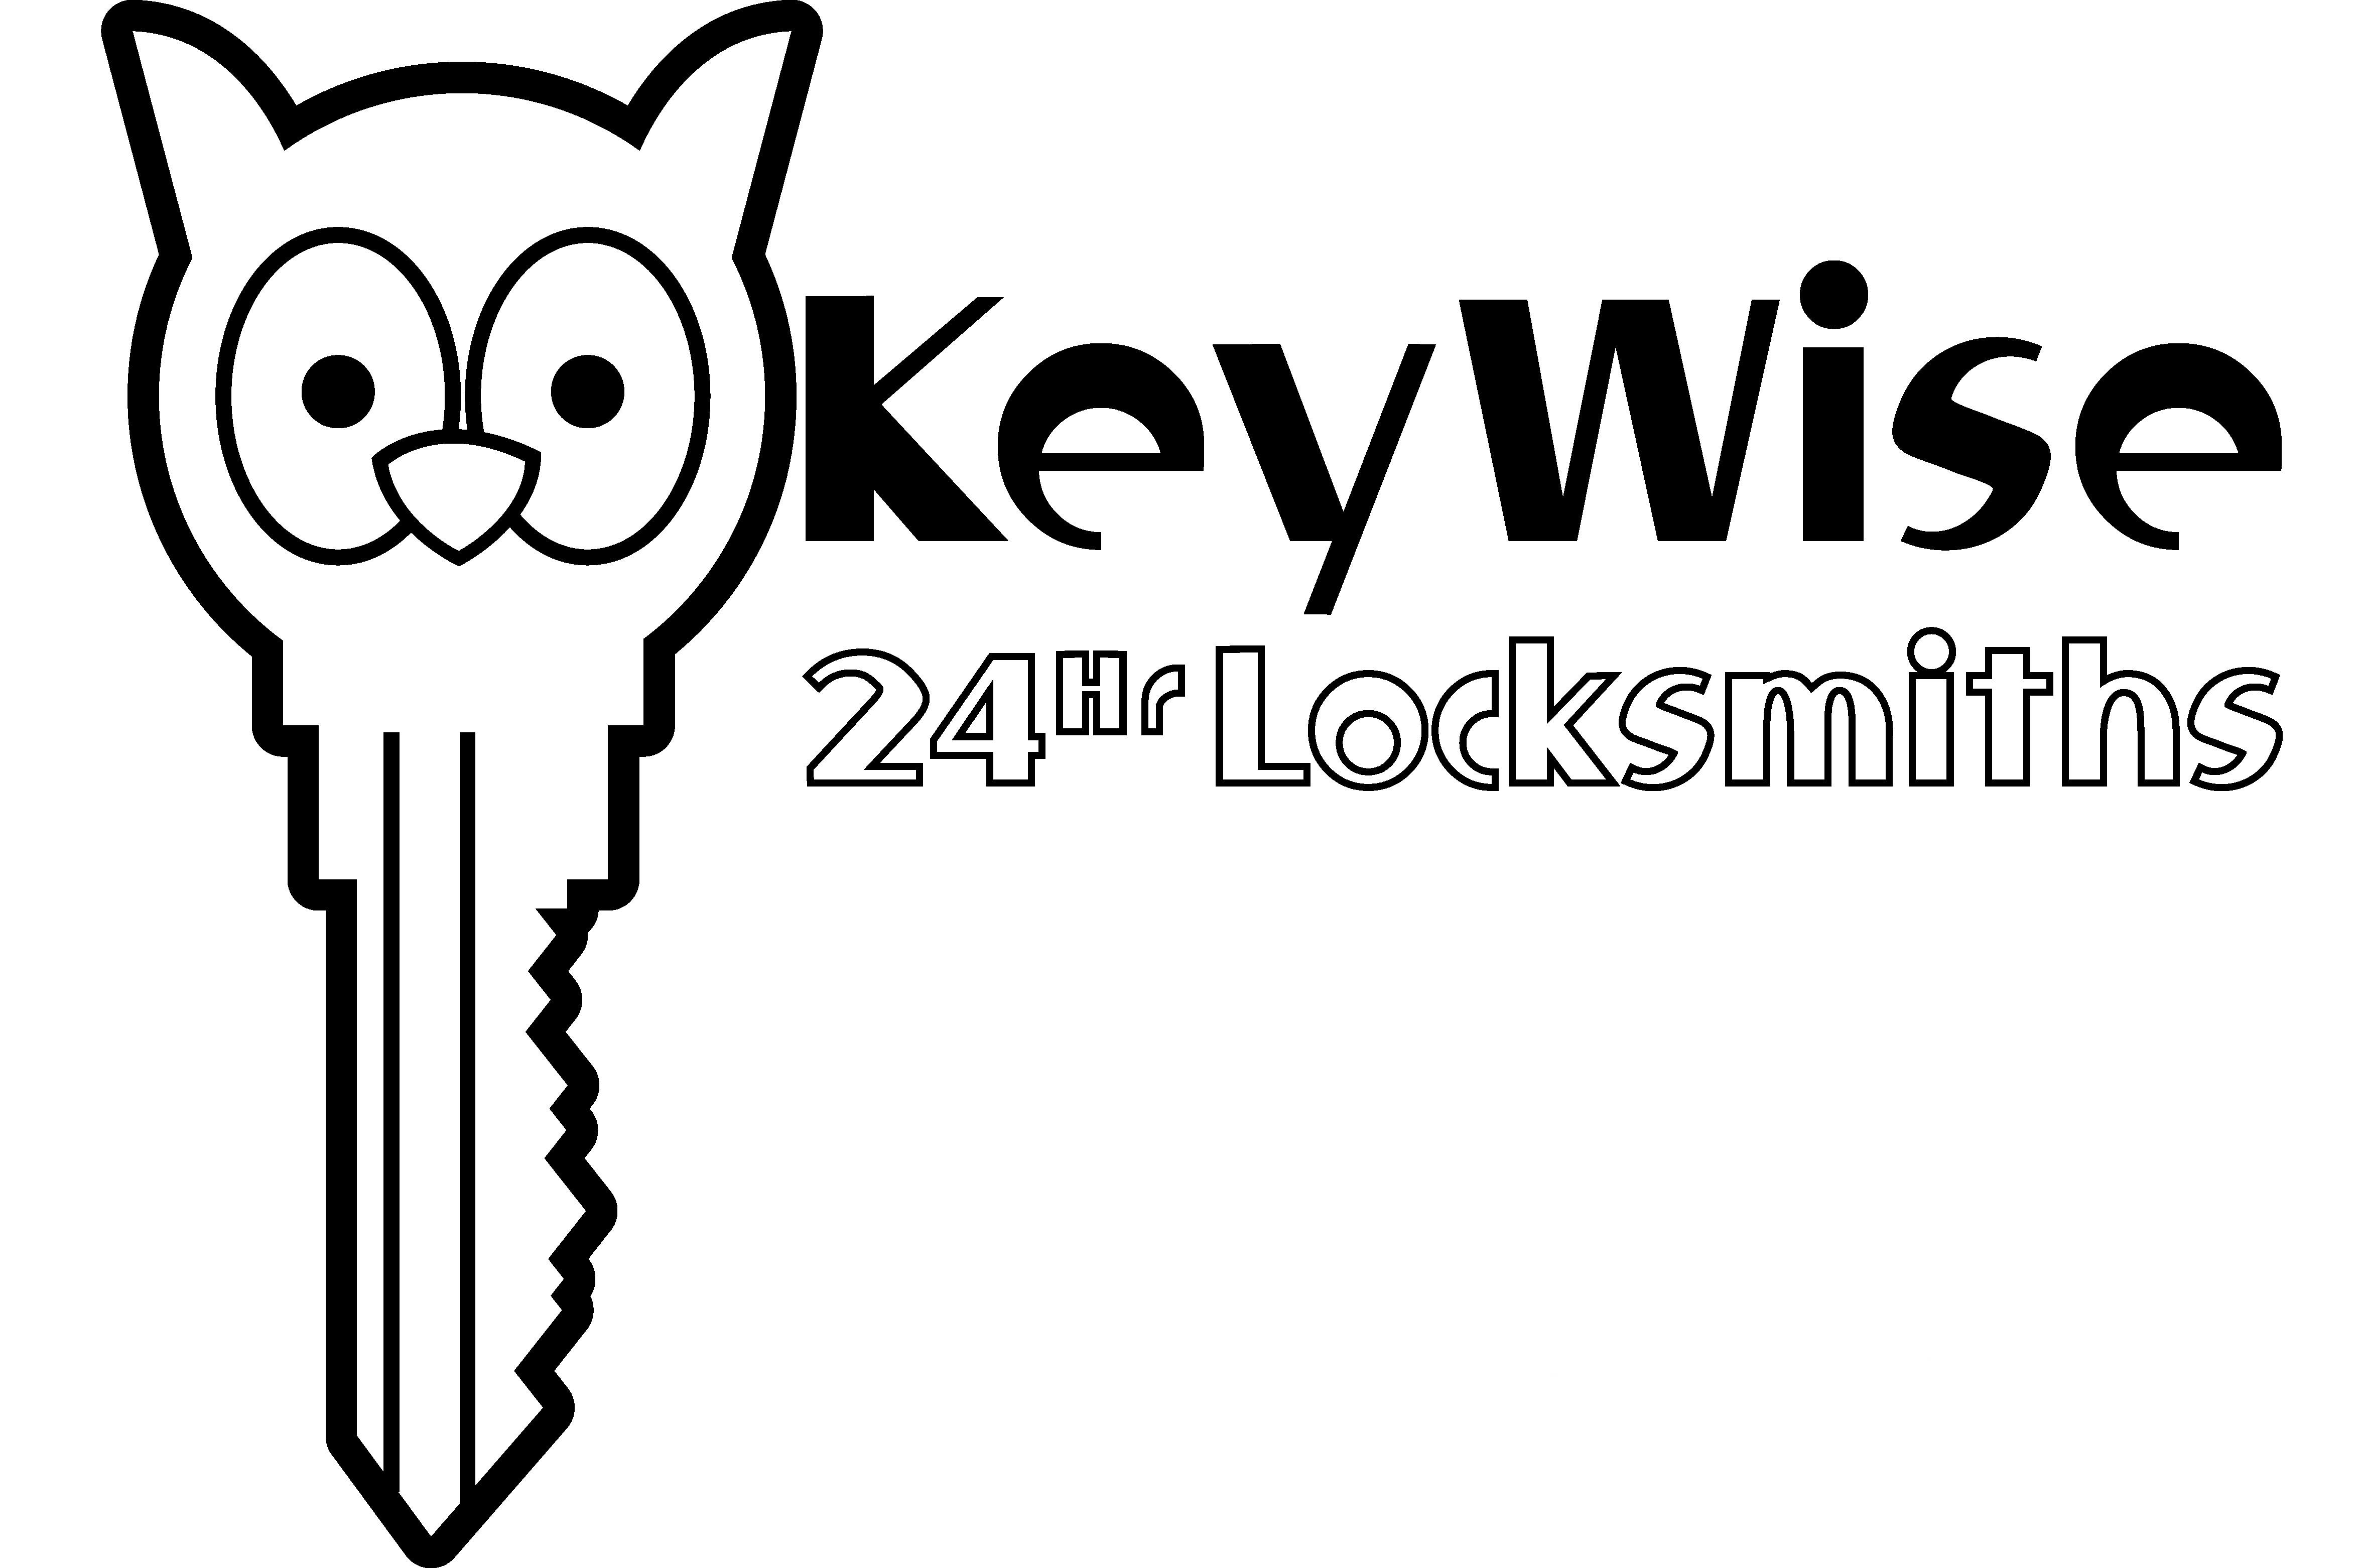 keywise locksmiths 